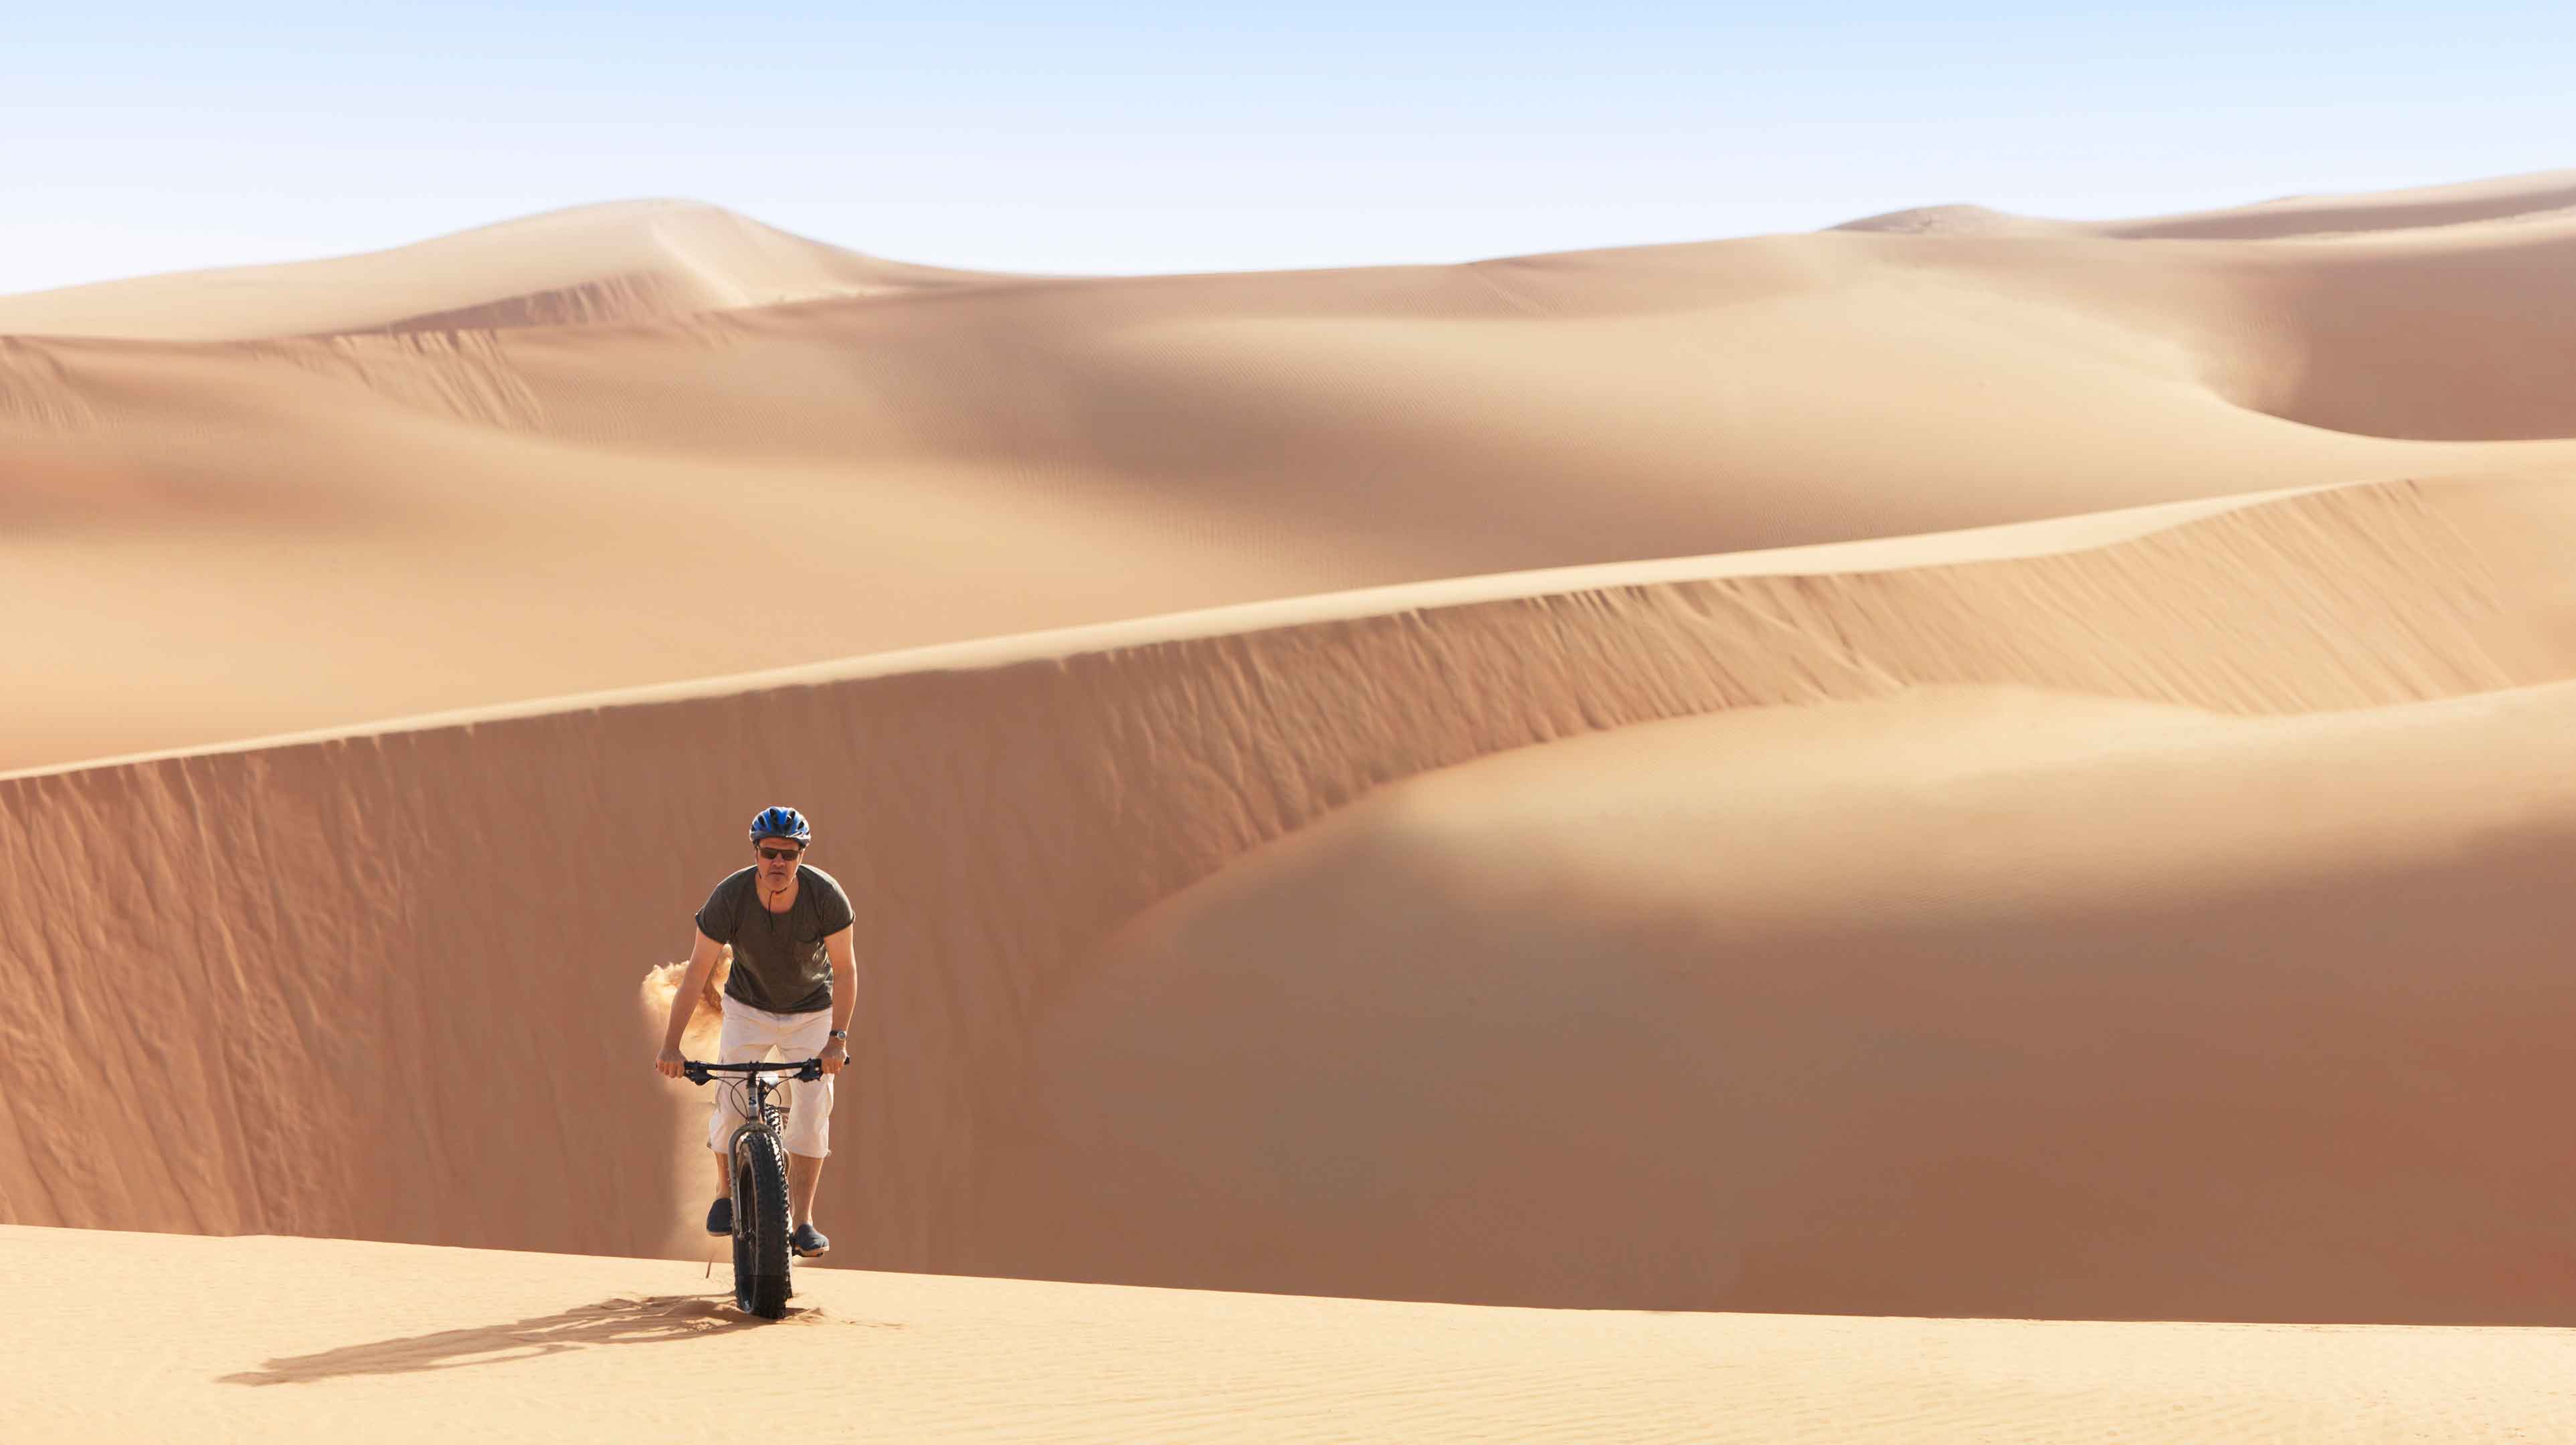 4. Fat biking down some of the world’s tallest desert dunes